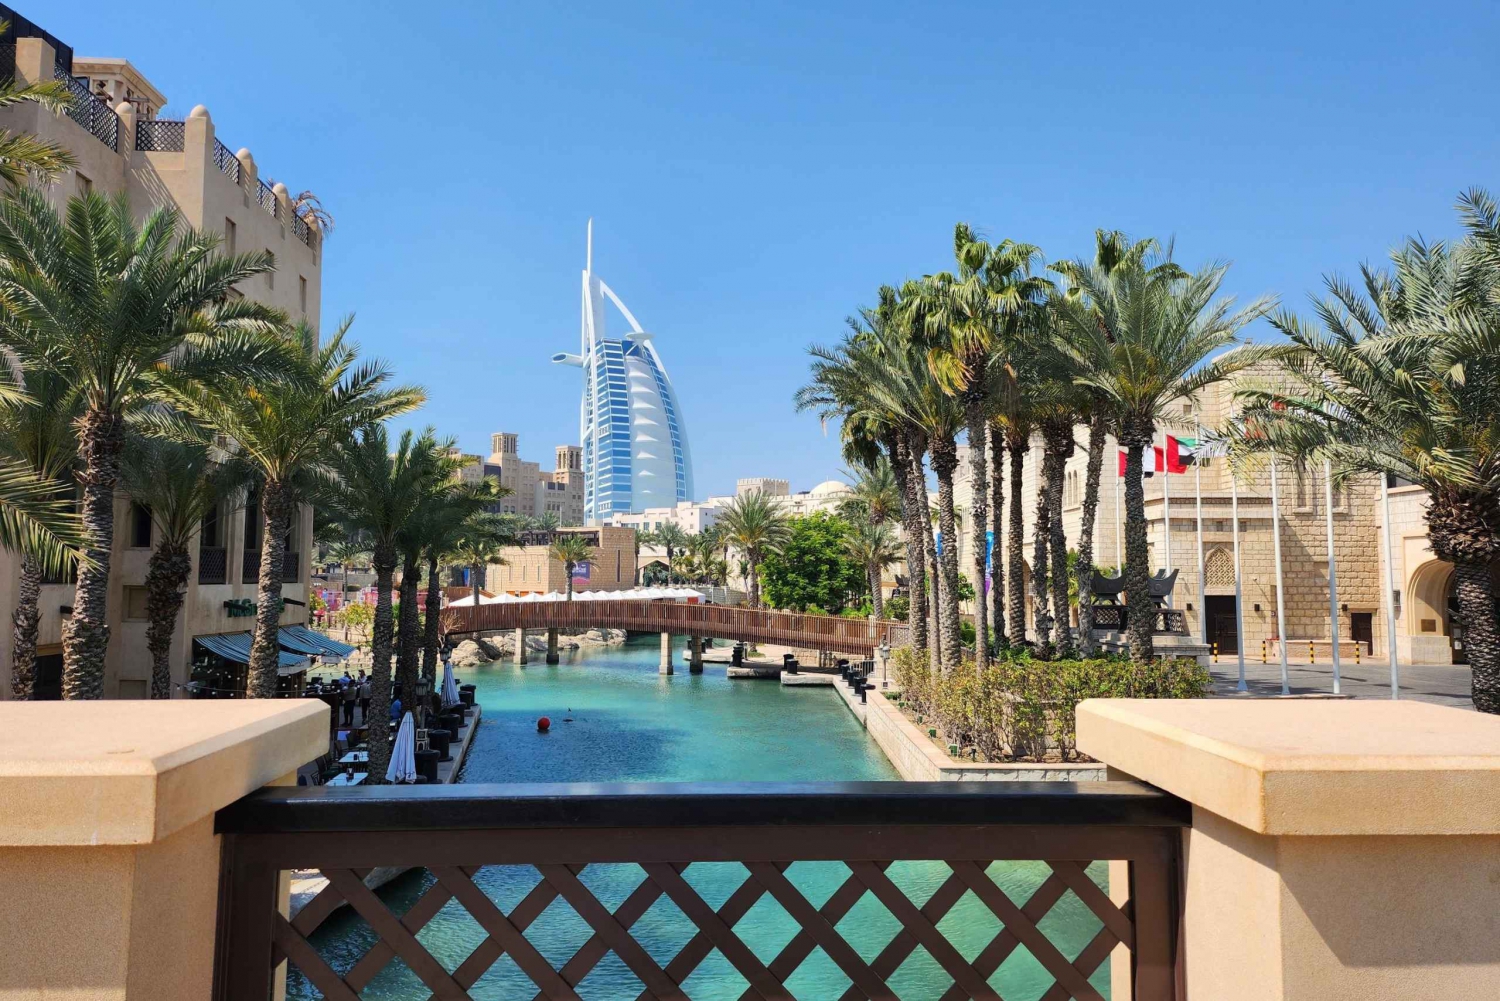 Dubaï : Points forts de la ville, entrée du cadre, souks et mosquée bleue